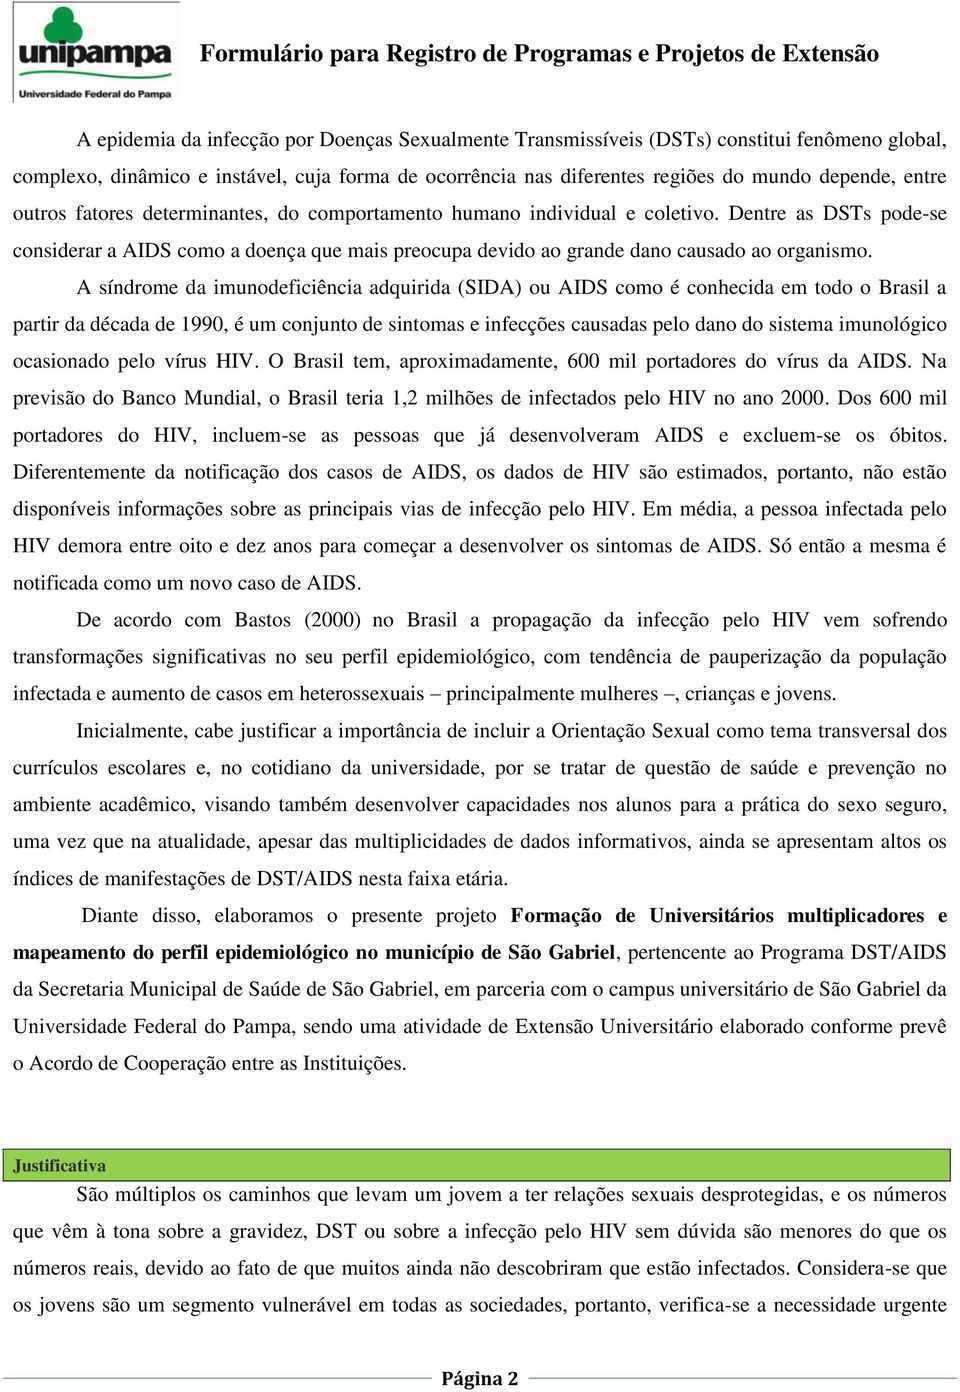 síndrome da imunodeficiência adquirida (SID) ou IDS como é conhecida em todo o Brasil a partir da década de 1990, é um conjunto de sintomas e infecções causadas pelo dano do sistema imunológico